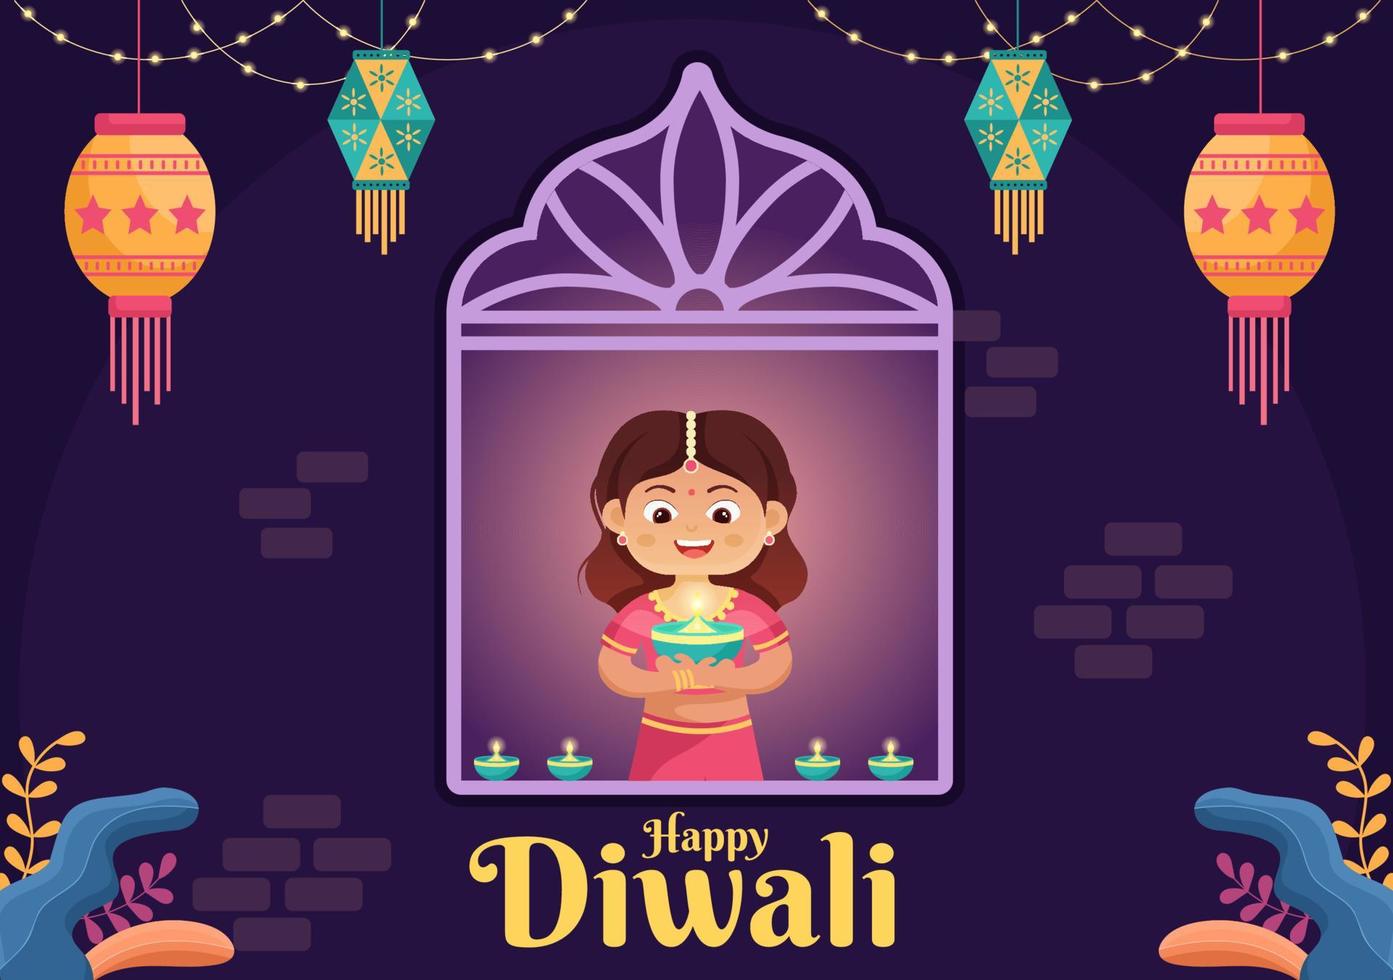 indiska firar diwali dag bakgrund vektor illustration